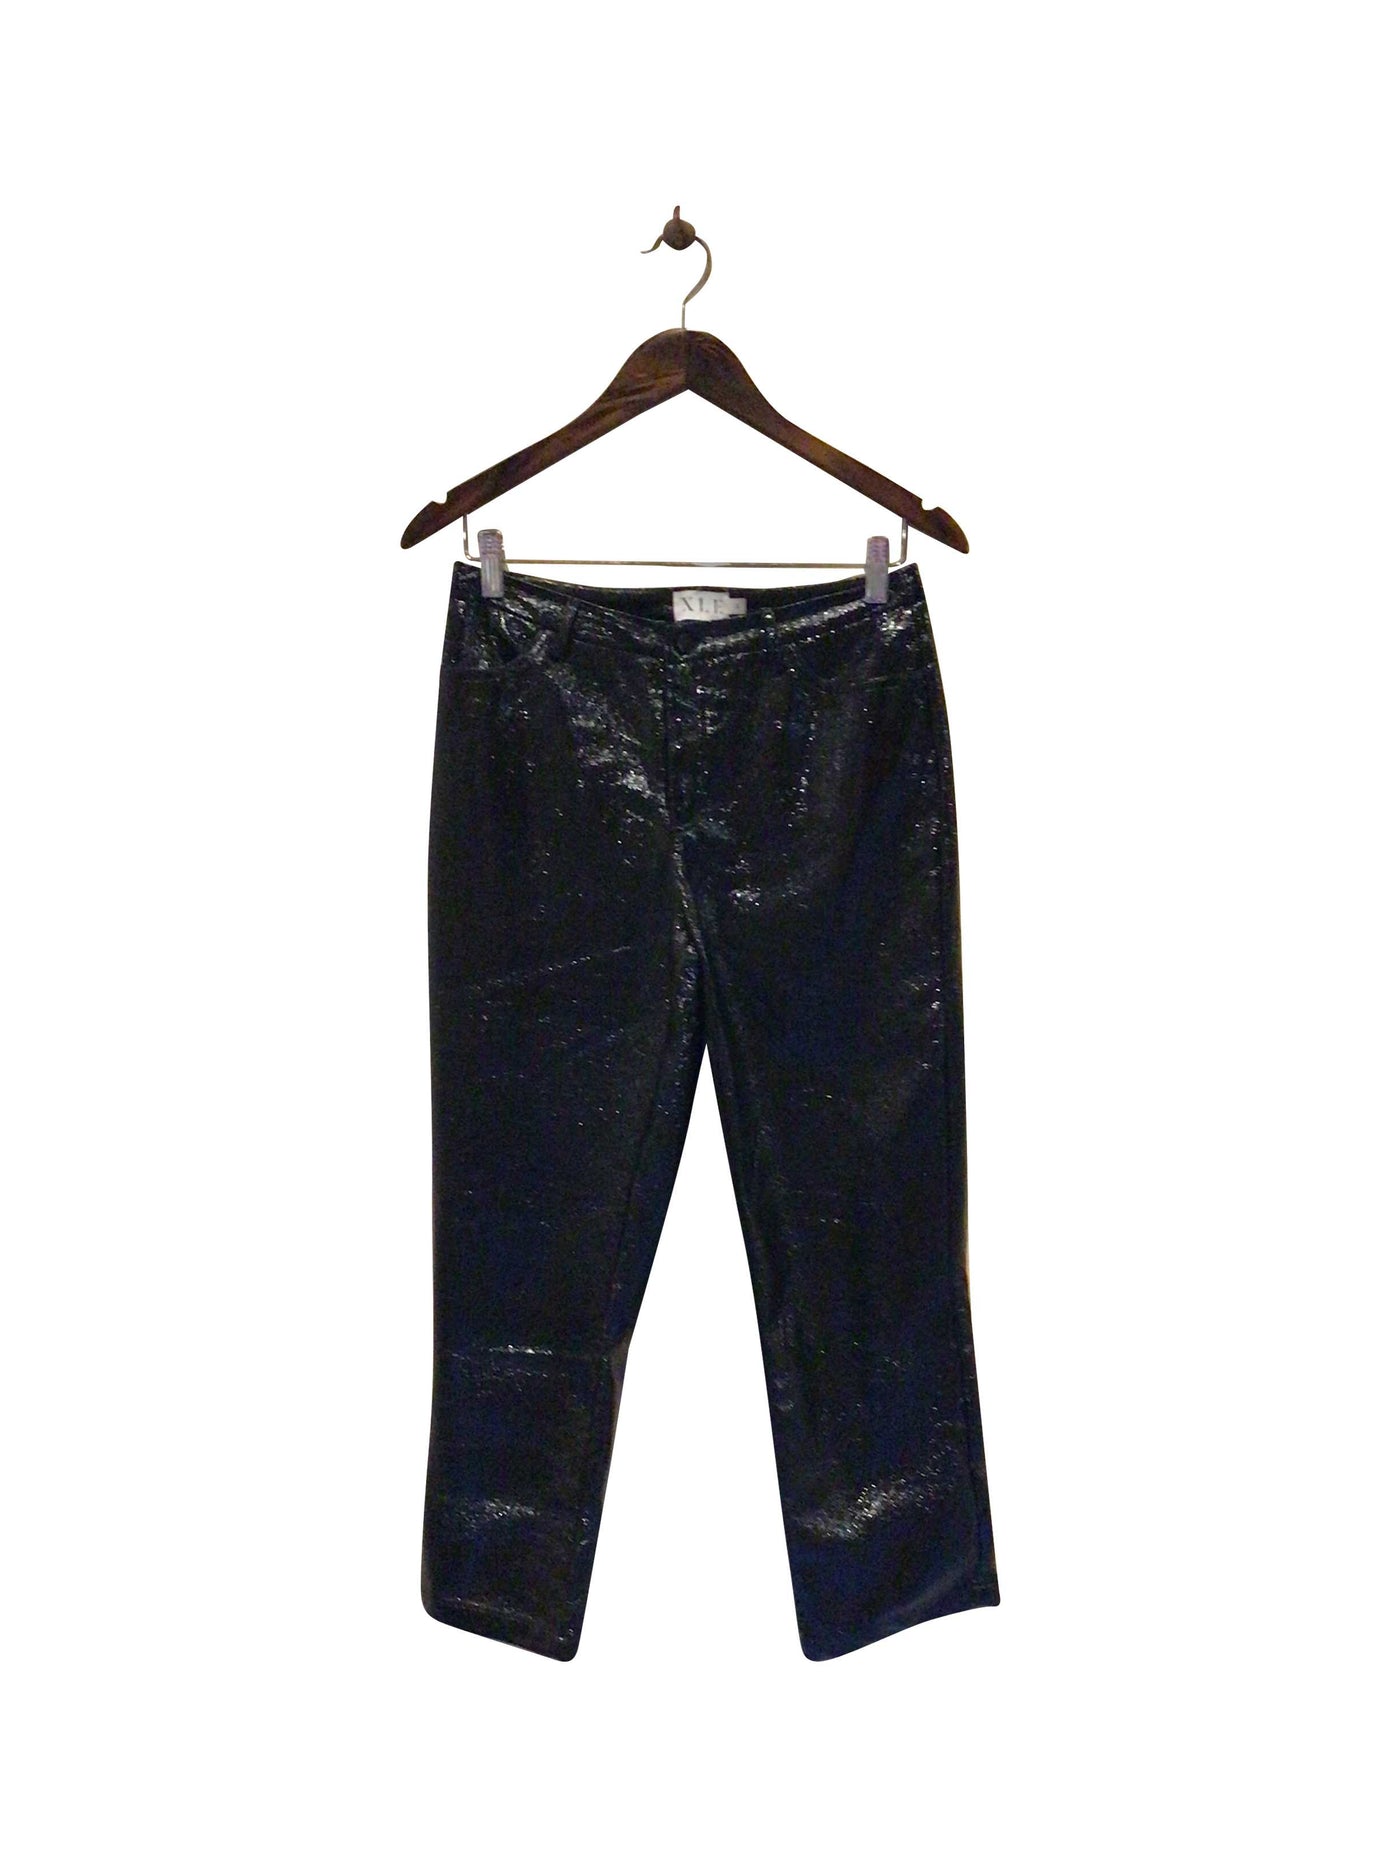 XLE Regular fit Pant in Black  -  S  13.25 Koop